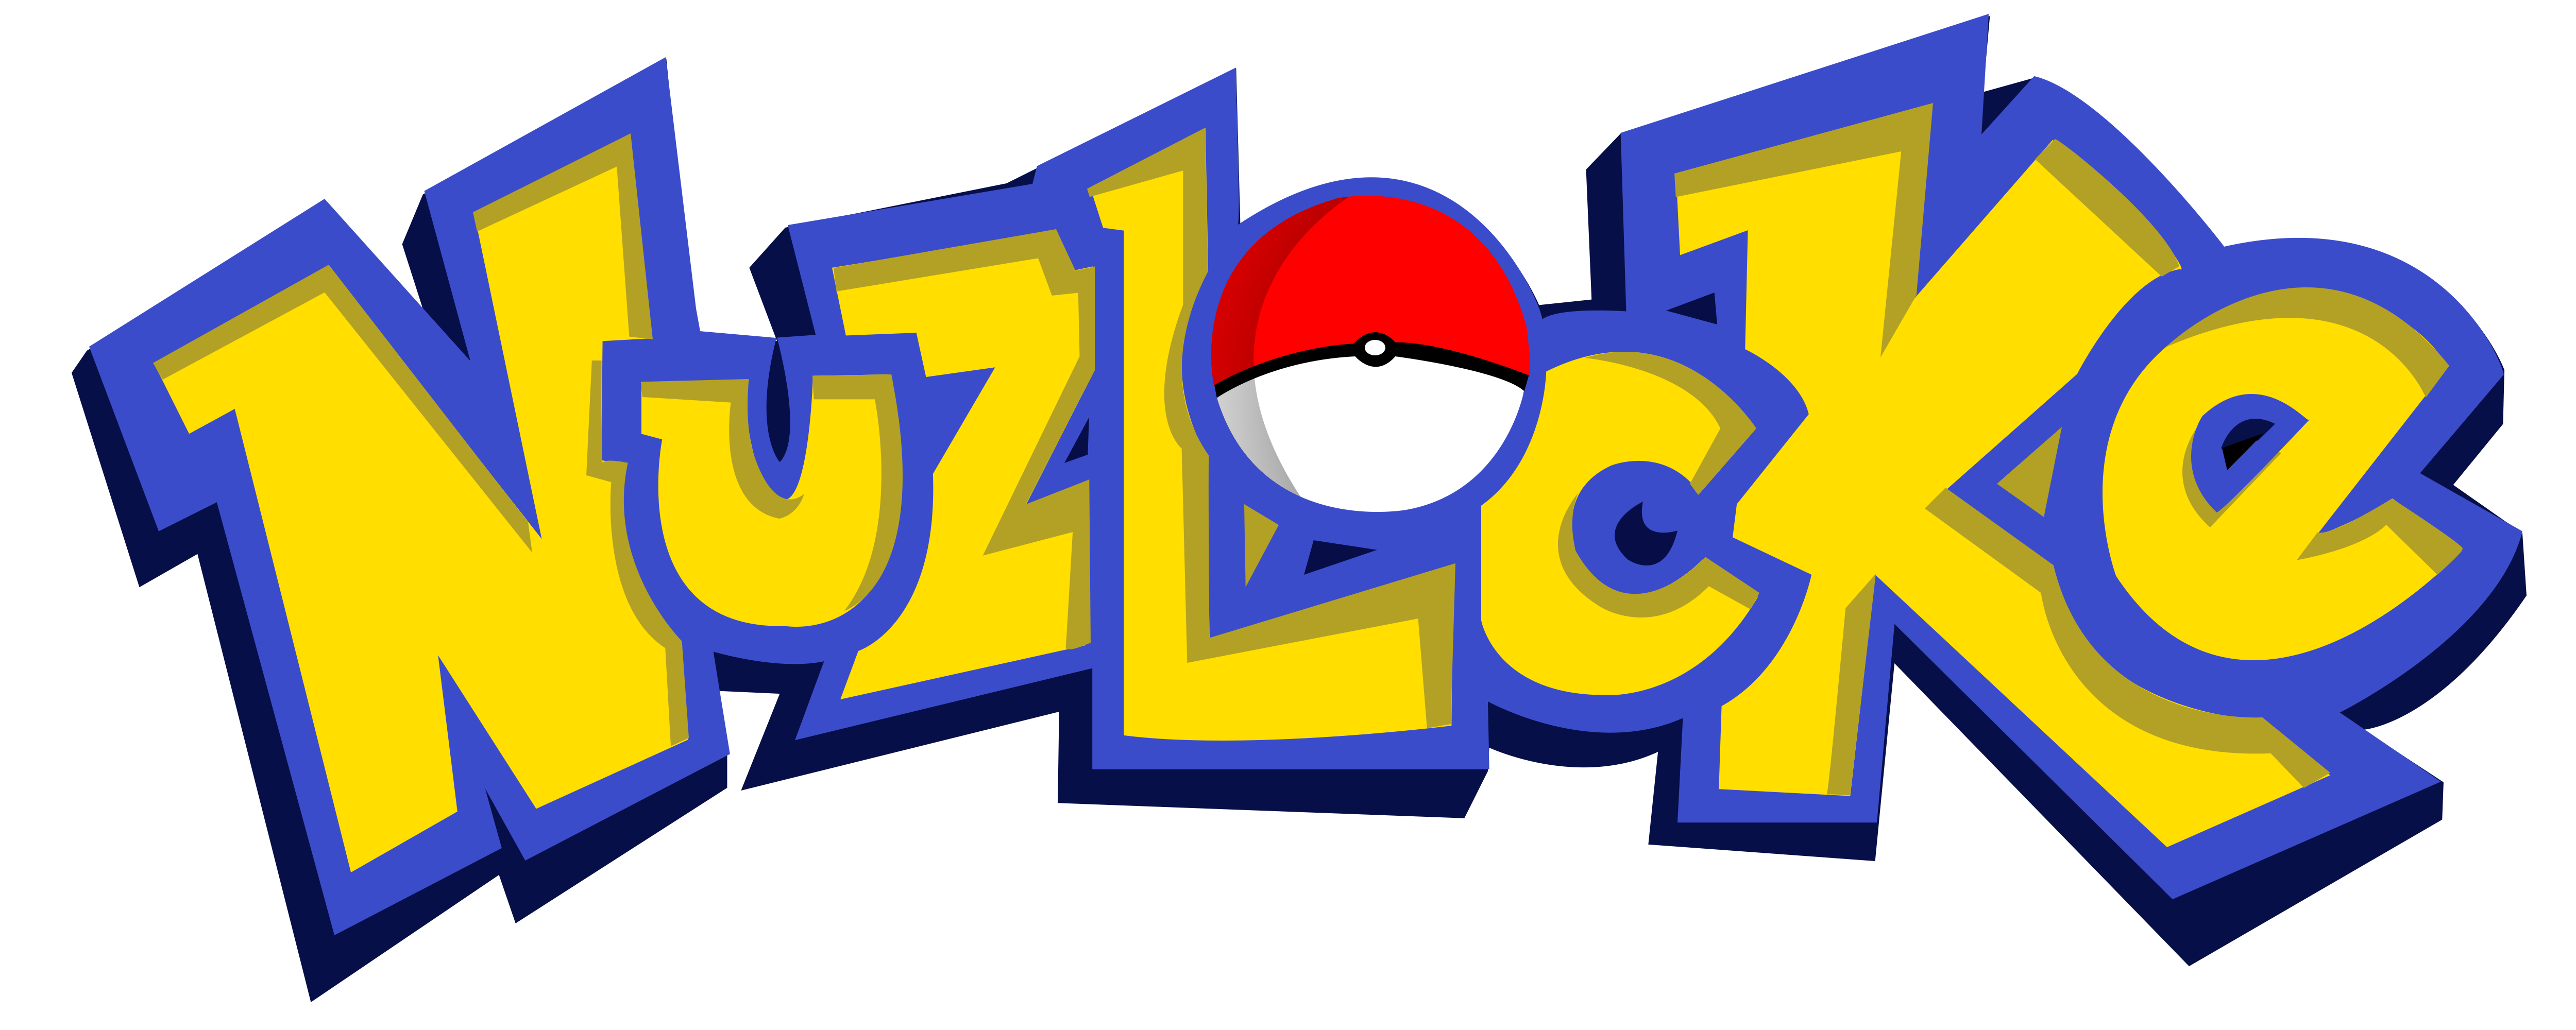 Pokemon Logo Png Free Transparent Png Logos